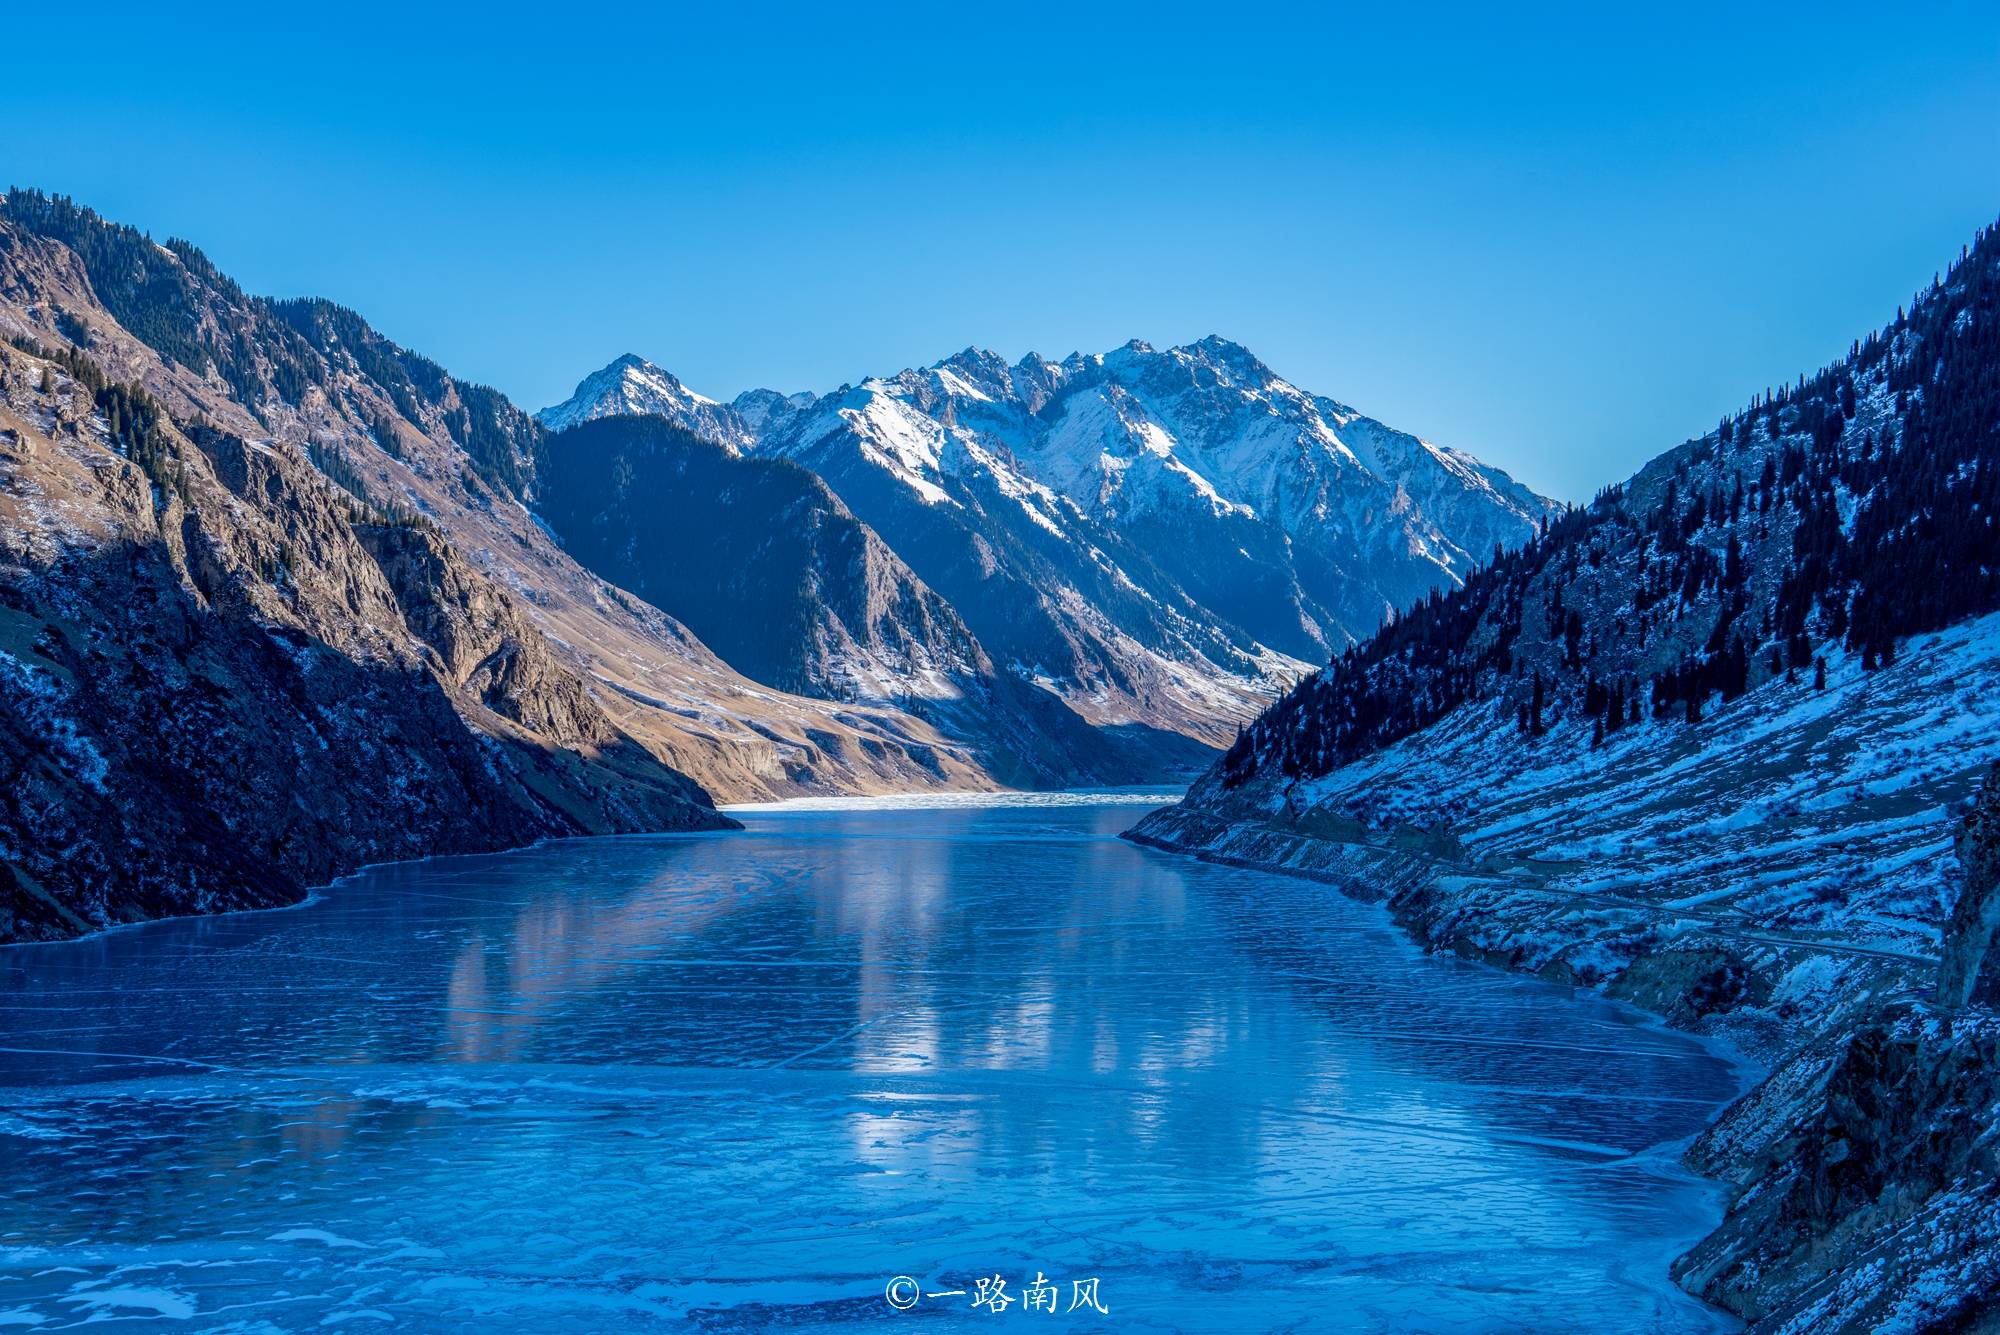 新疆宝藏级旅游县,自古盛产汗血宝马,玉湖的蓝冰世界罕见